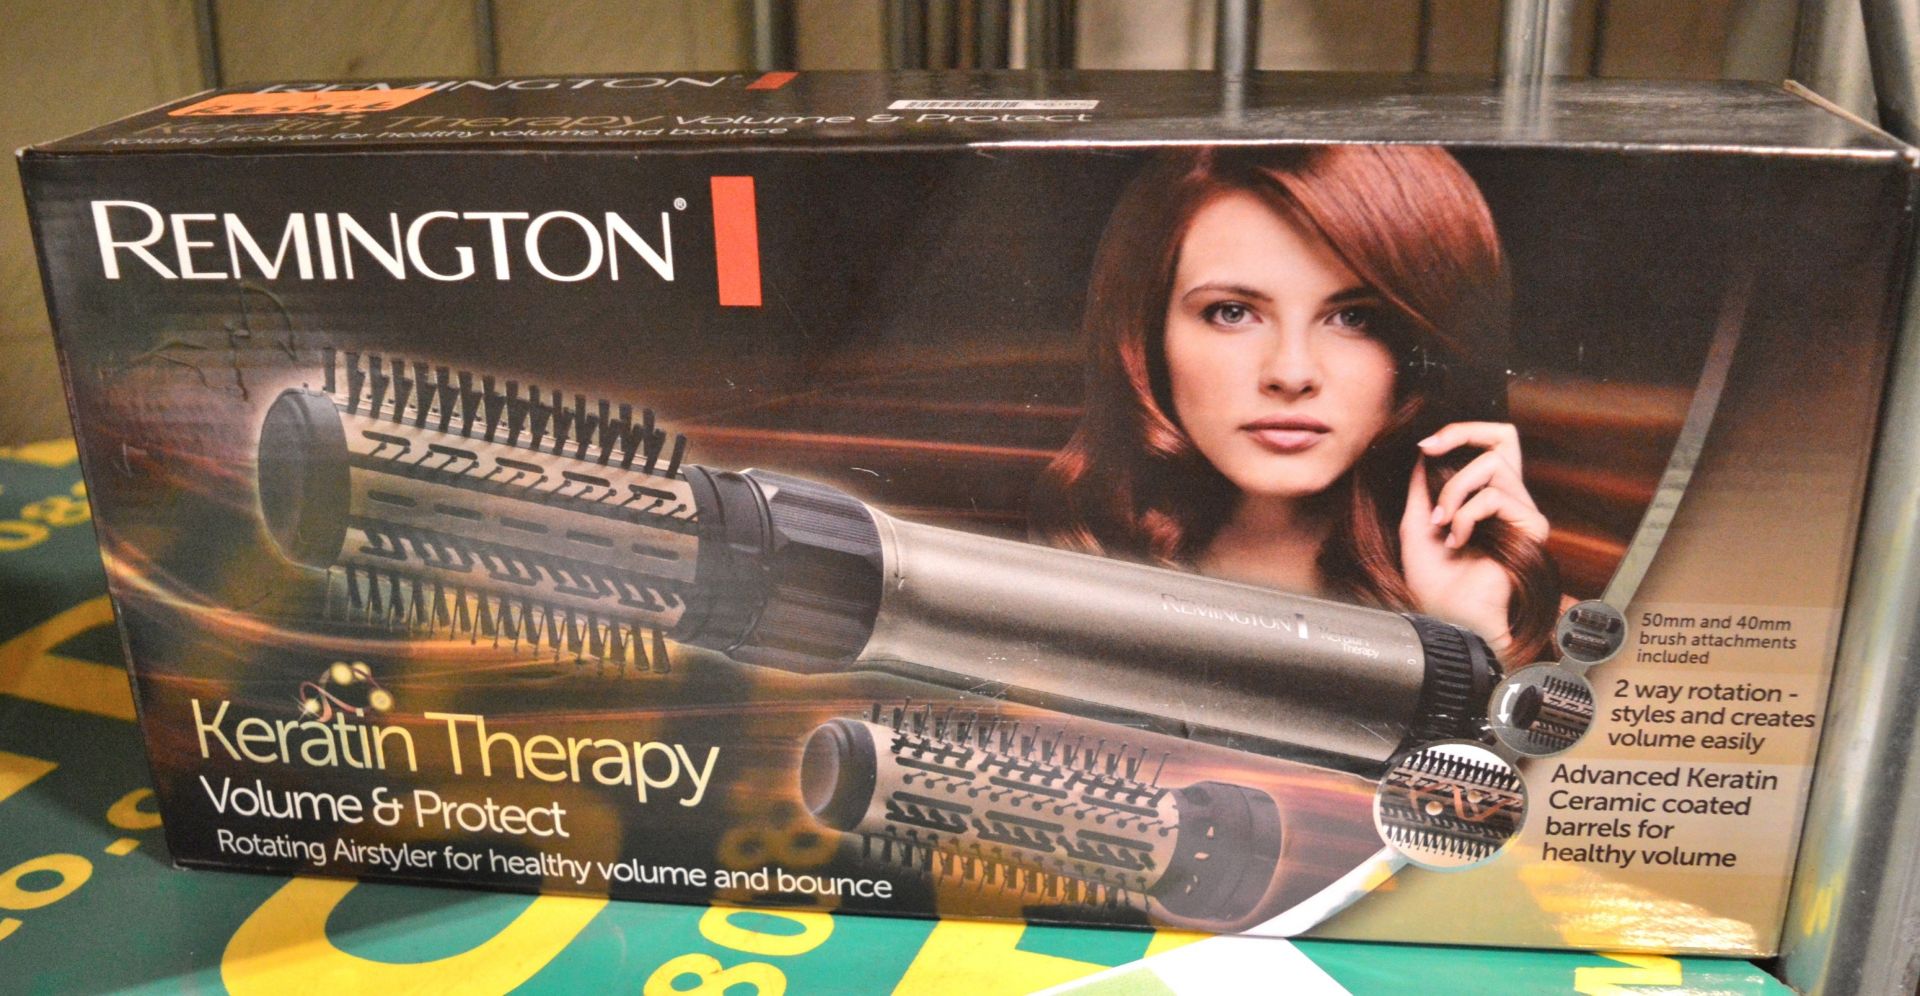 Remington Hair Styler - Image 2 of 2